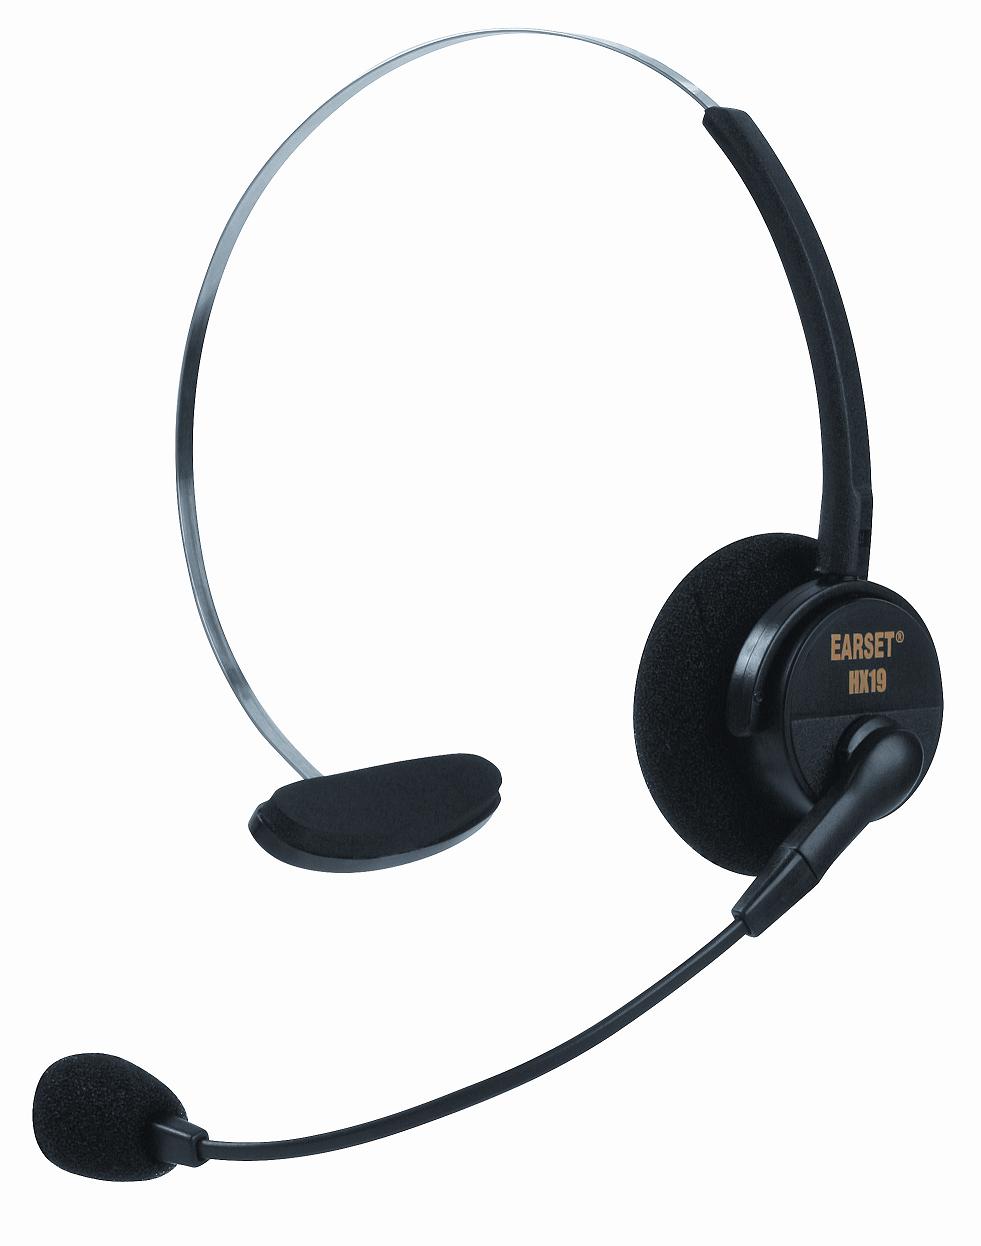 Headset Earset HX-19